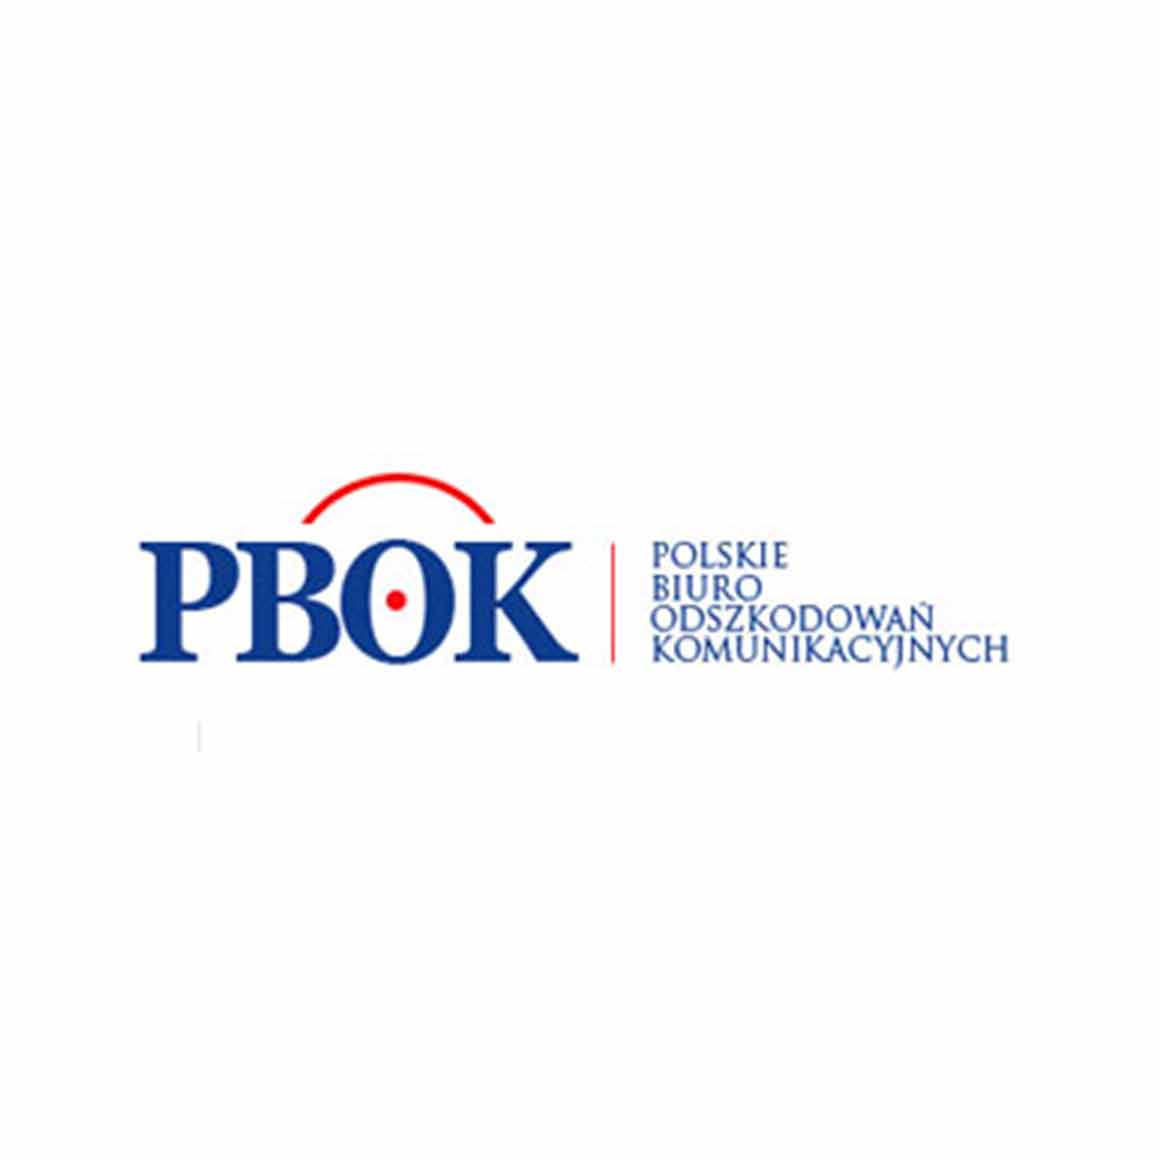 PBOK (Polskie Biuro Odszkodowań Komunikacyjnych MICHAŁ GRUS)